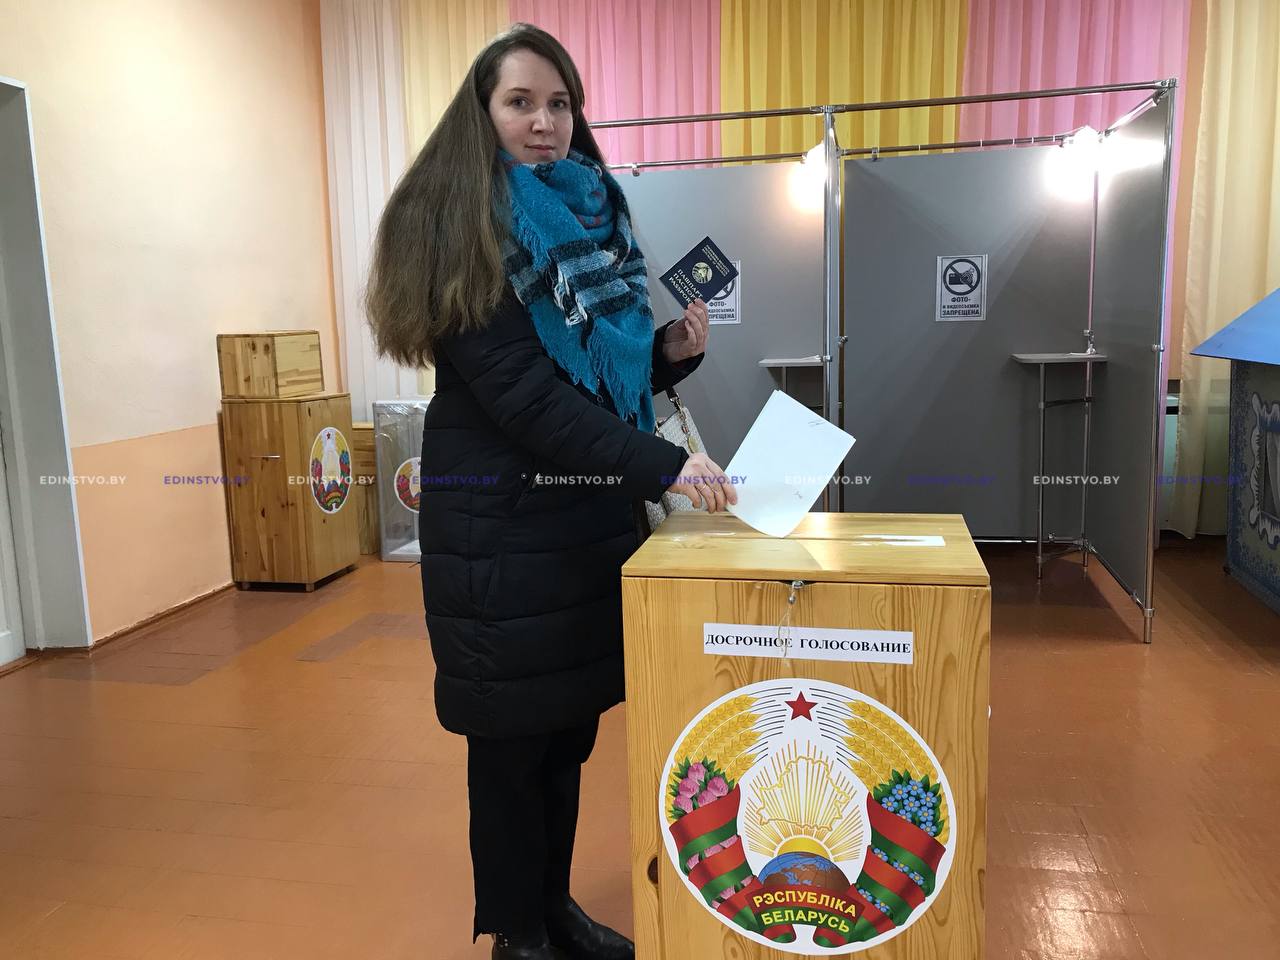 Молодые парламентарии Екатерина Кондратенко и Илья Доливейло воспользовалась избирательным правом